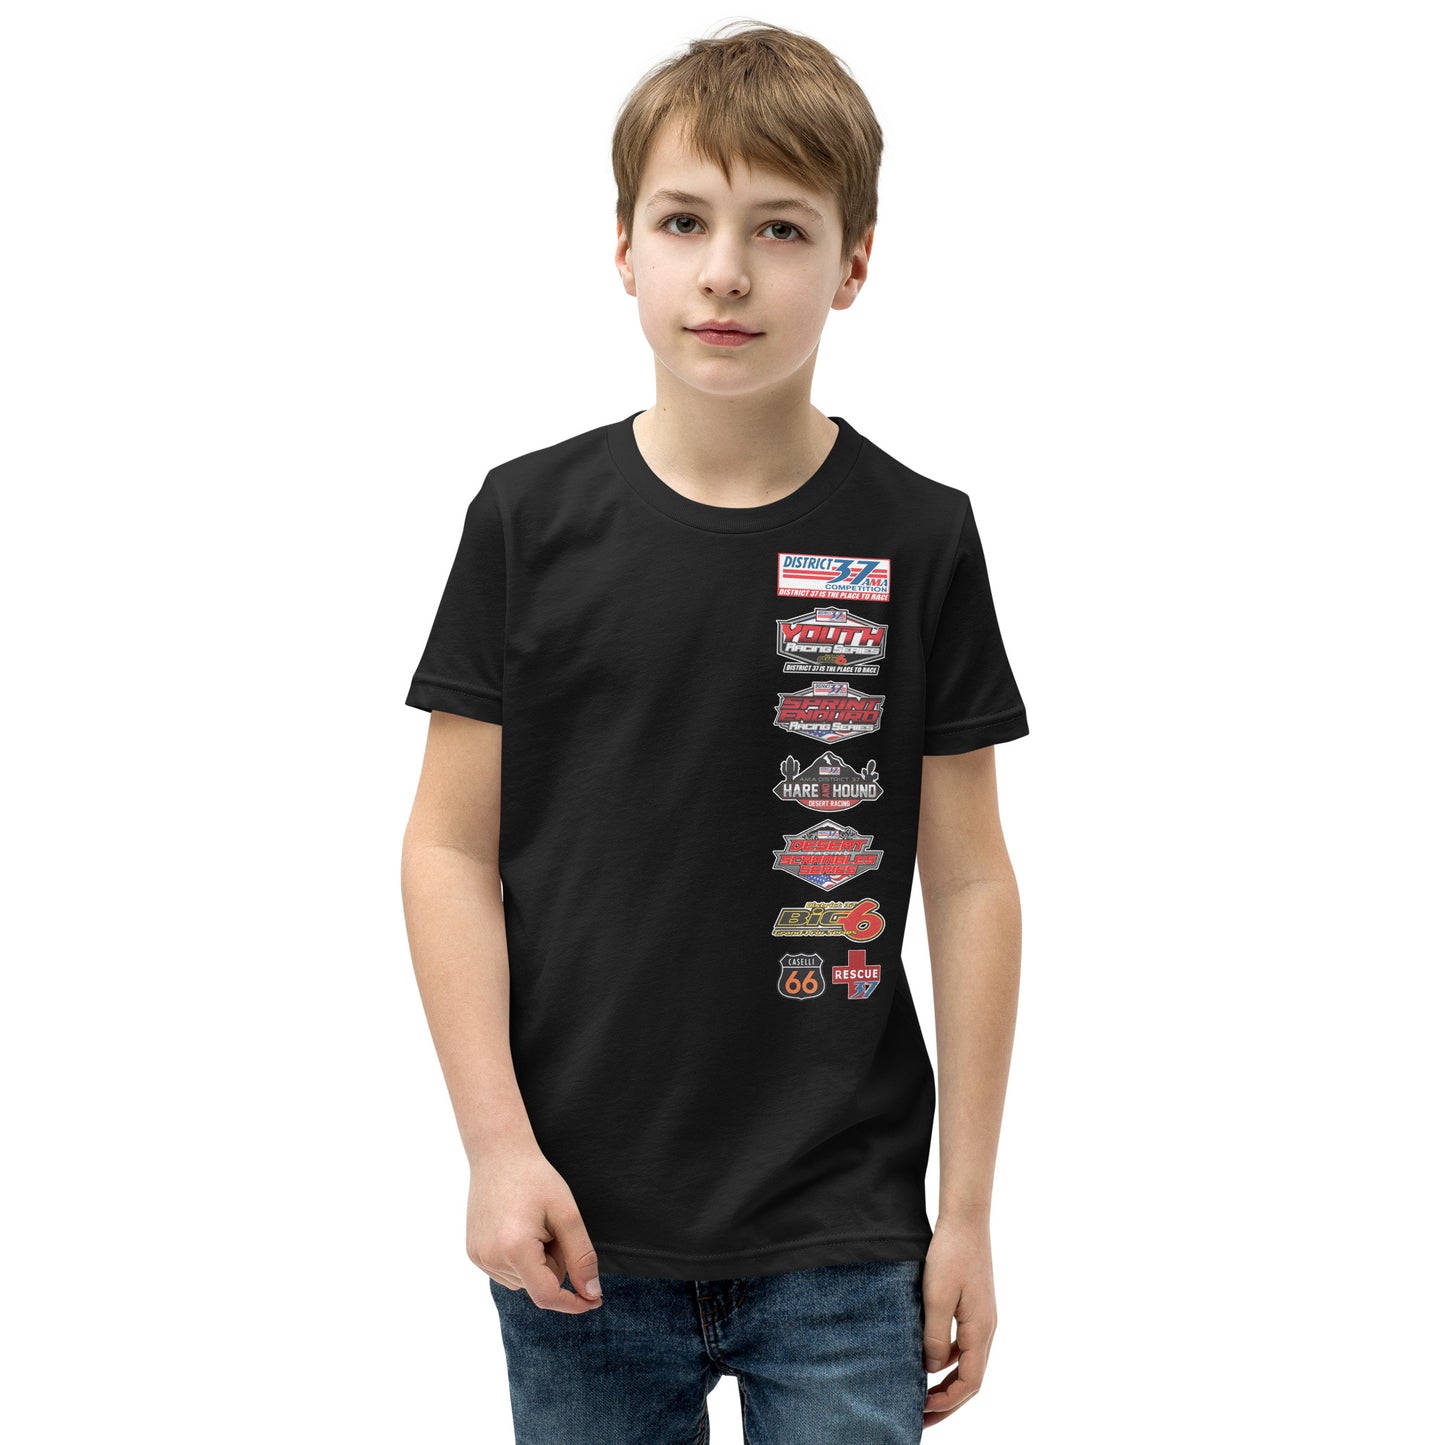 D37 Desert Scramble Series Shirt - Youth Size Shirt